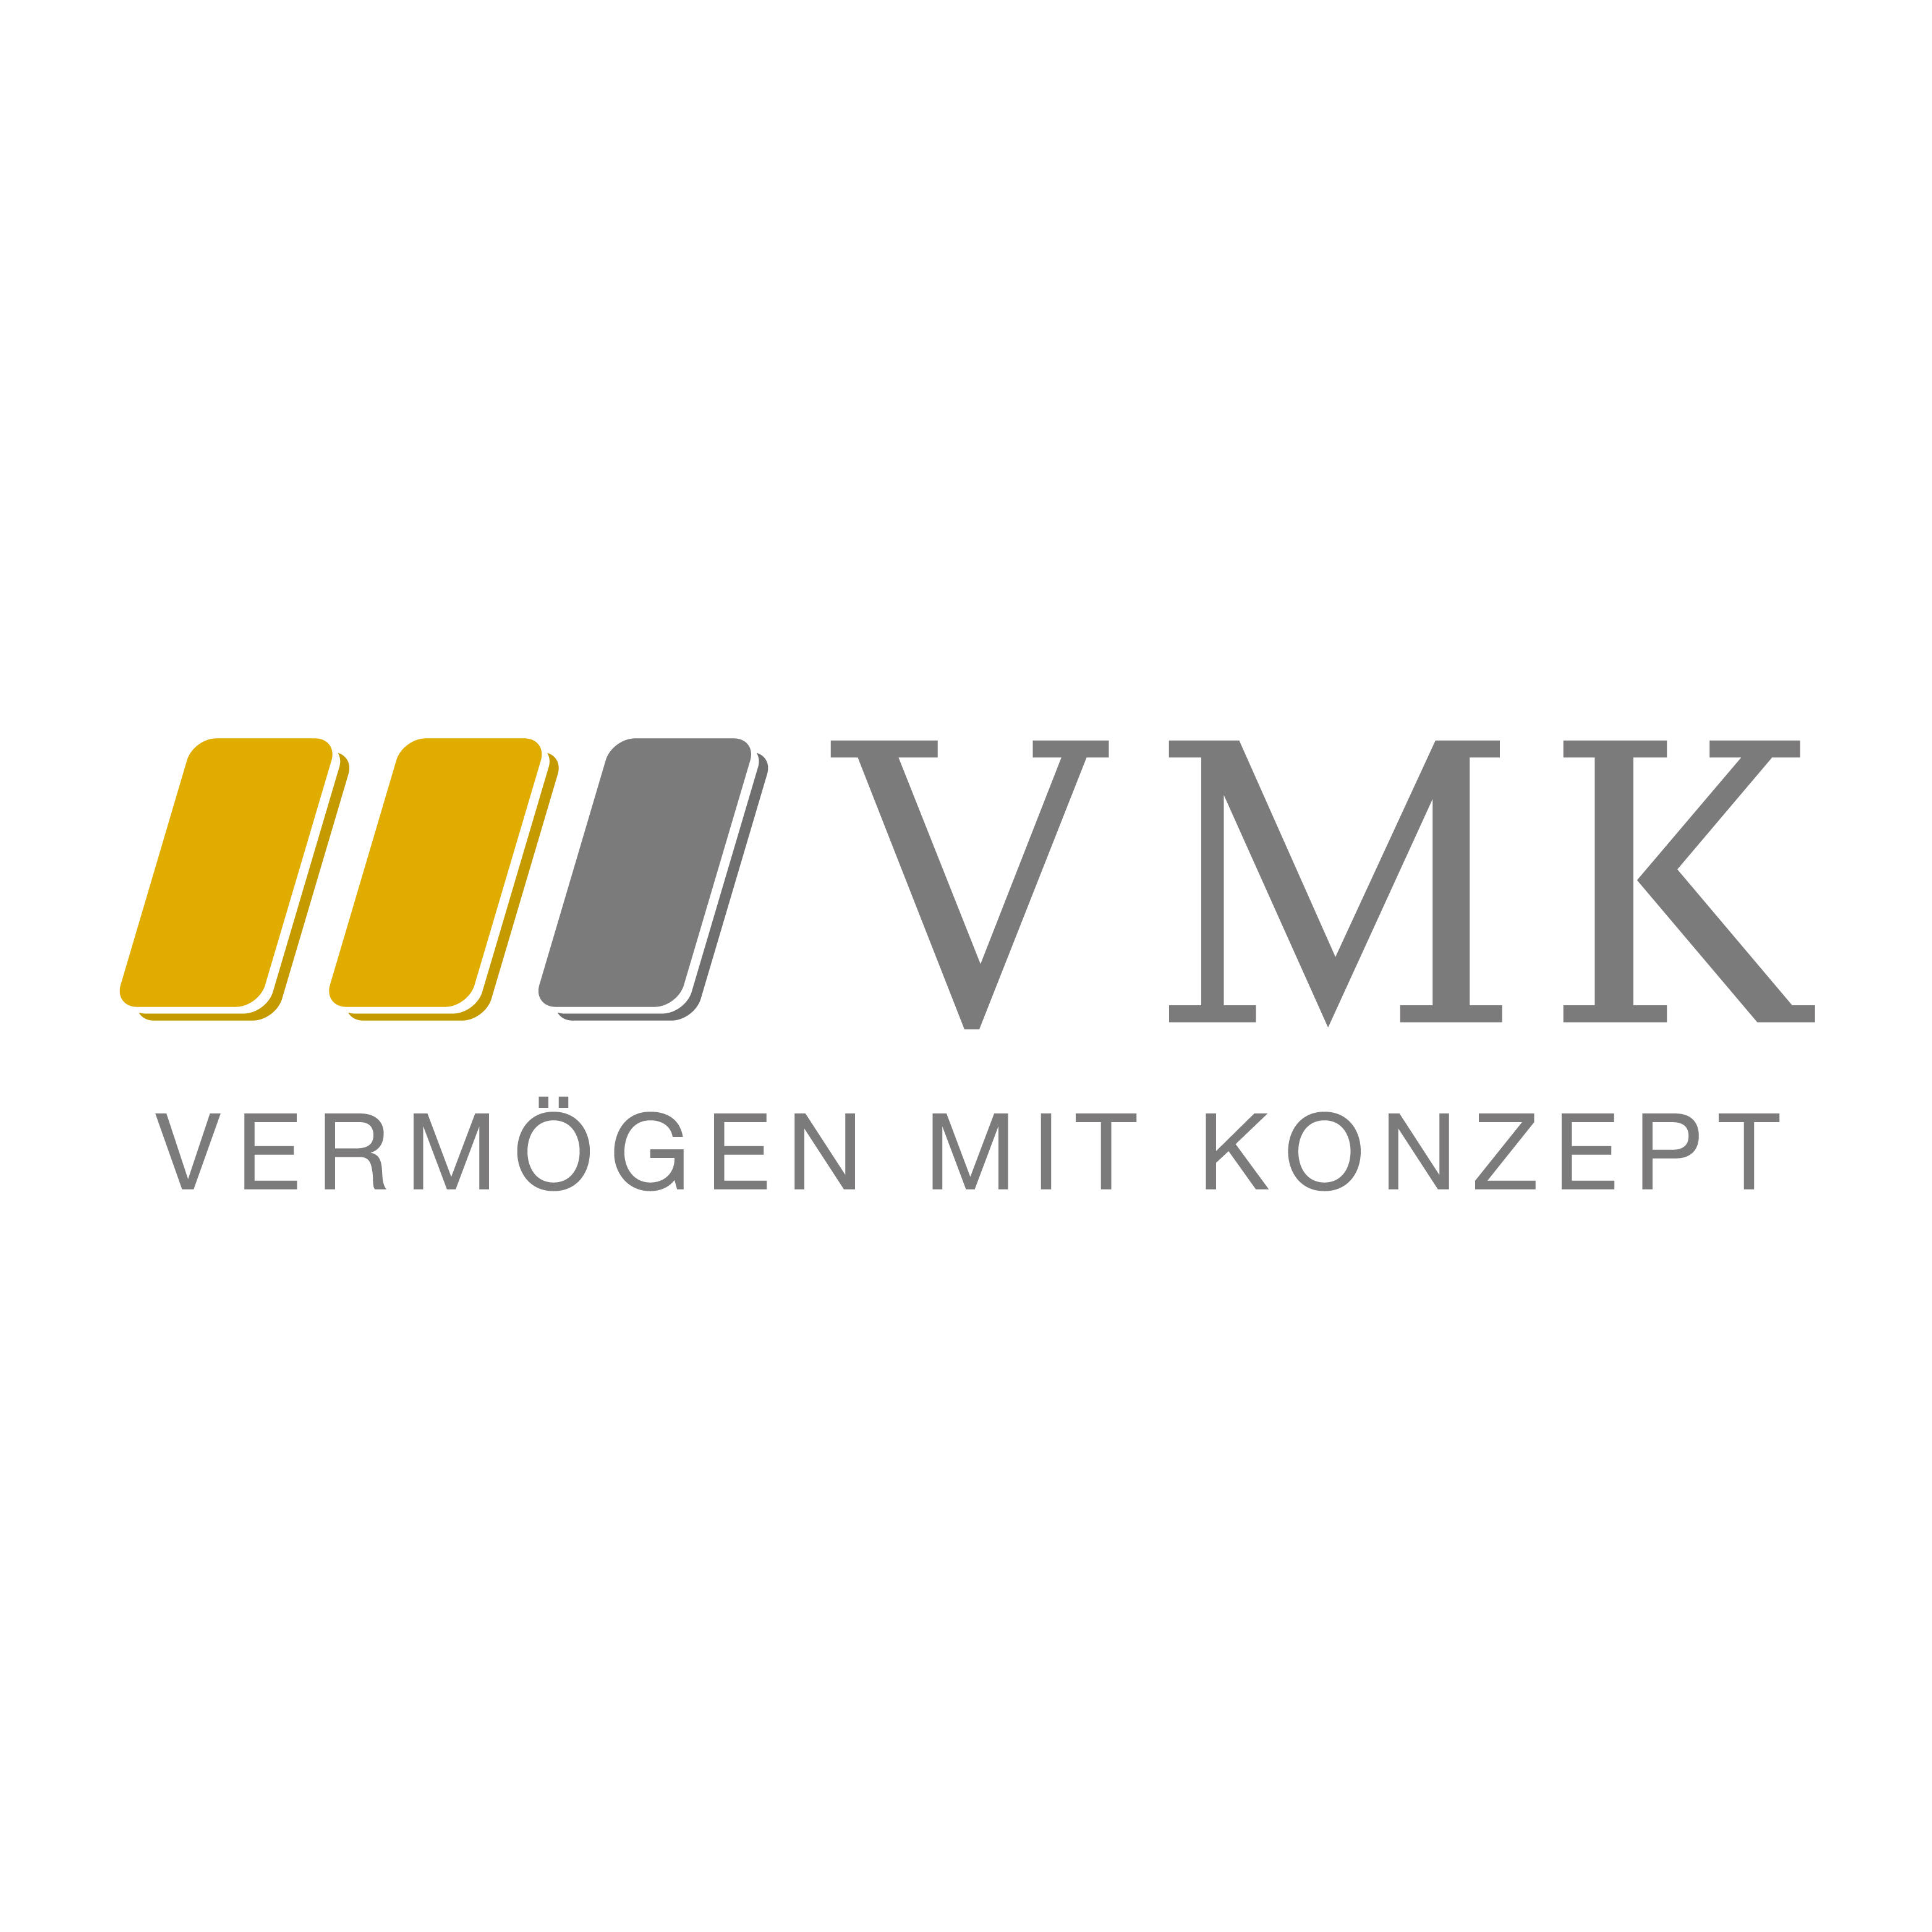 Kundenlogo VMK Vermögen mit Konzept GmbH & Co. KG